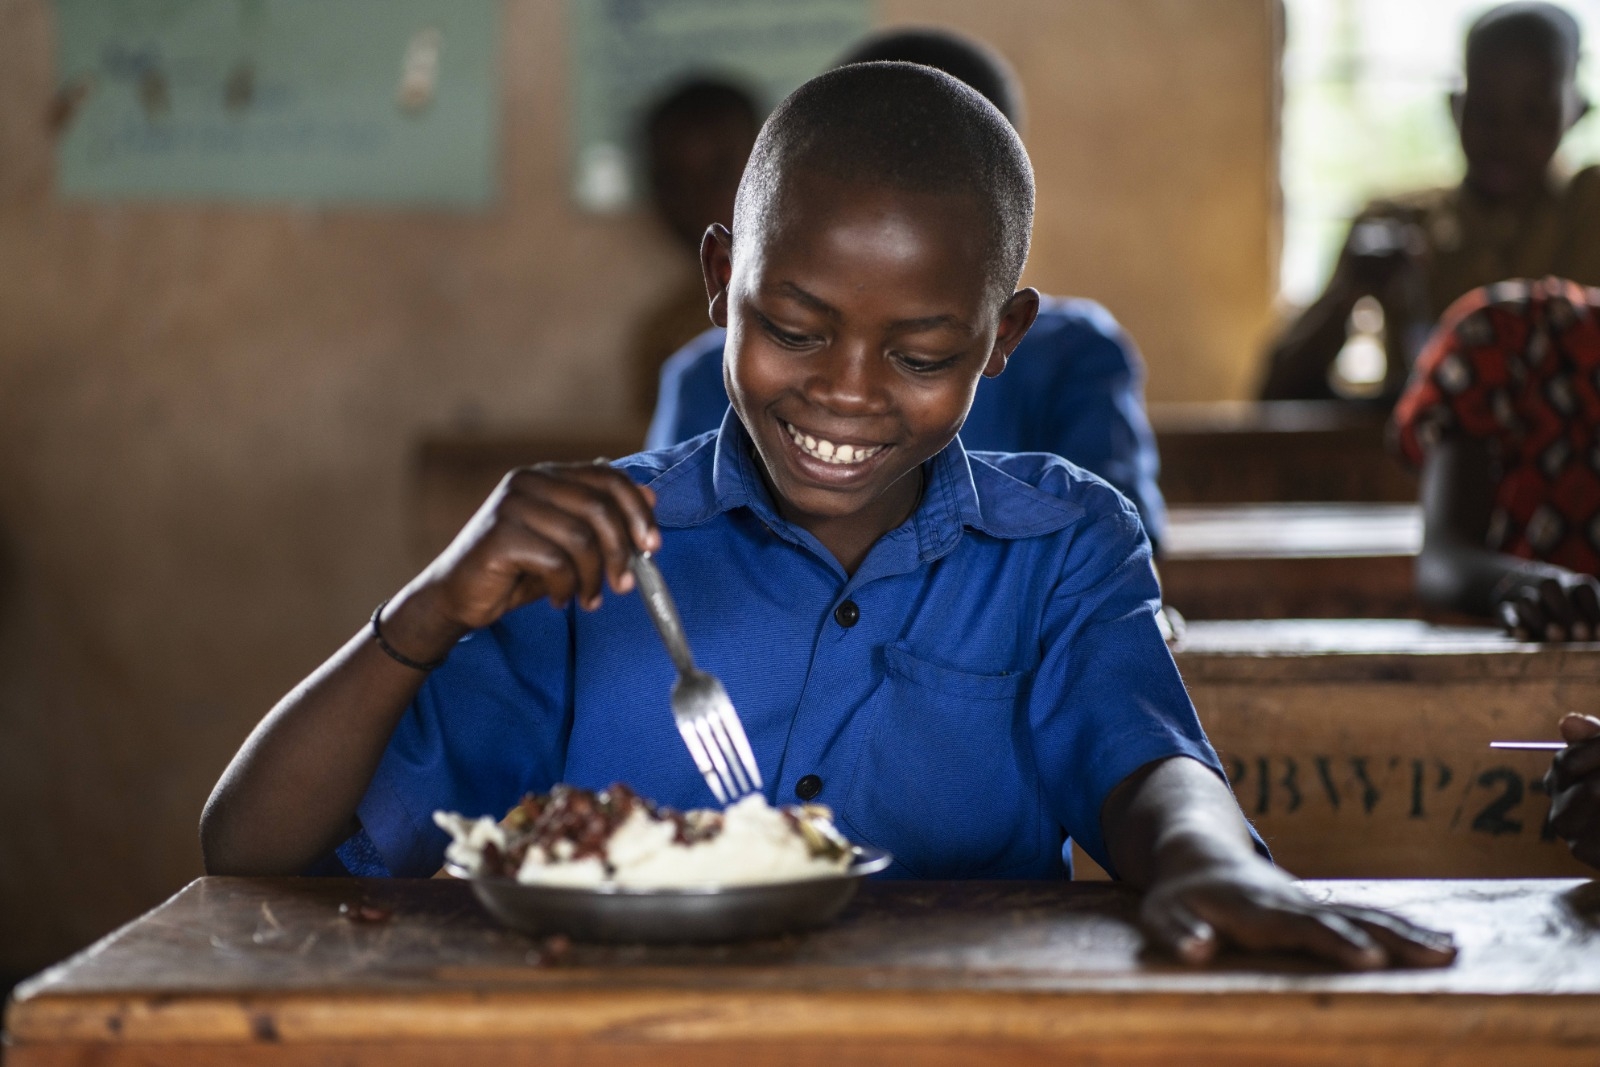 "Jeg skulle ønske alle barn fikk et måltid på skolen." Belyse er ni år, går på skolen i Rwanda og drømmer om å bli lege. Hver dag får barna et næringsrikt måltid fra Verdens matvareprogram. Foto: Verdens matvareprogram/Fredrik Lerneryd